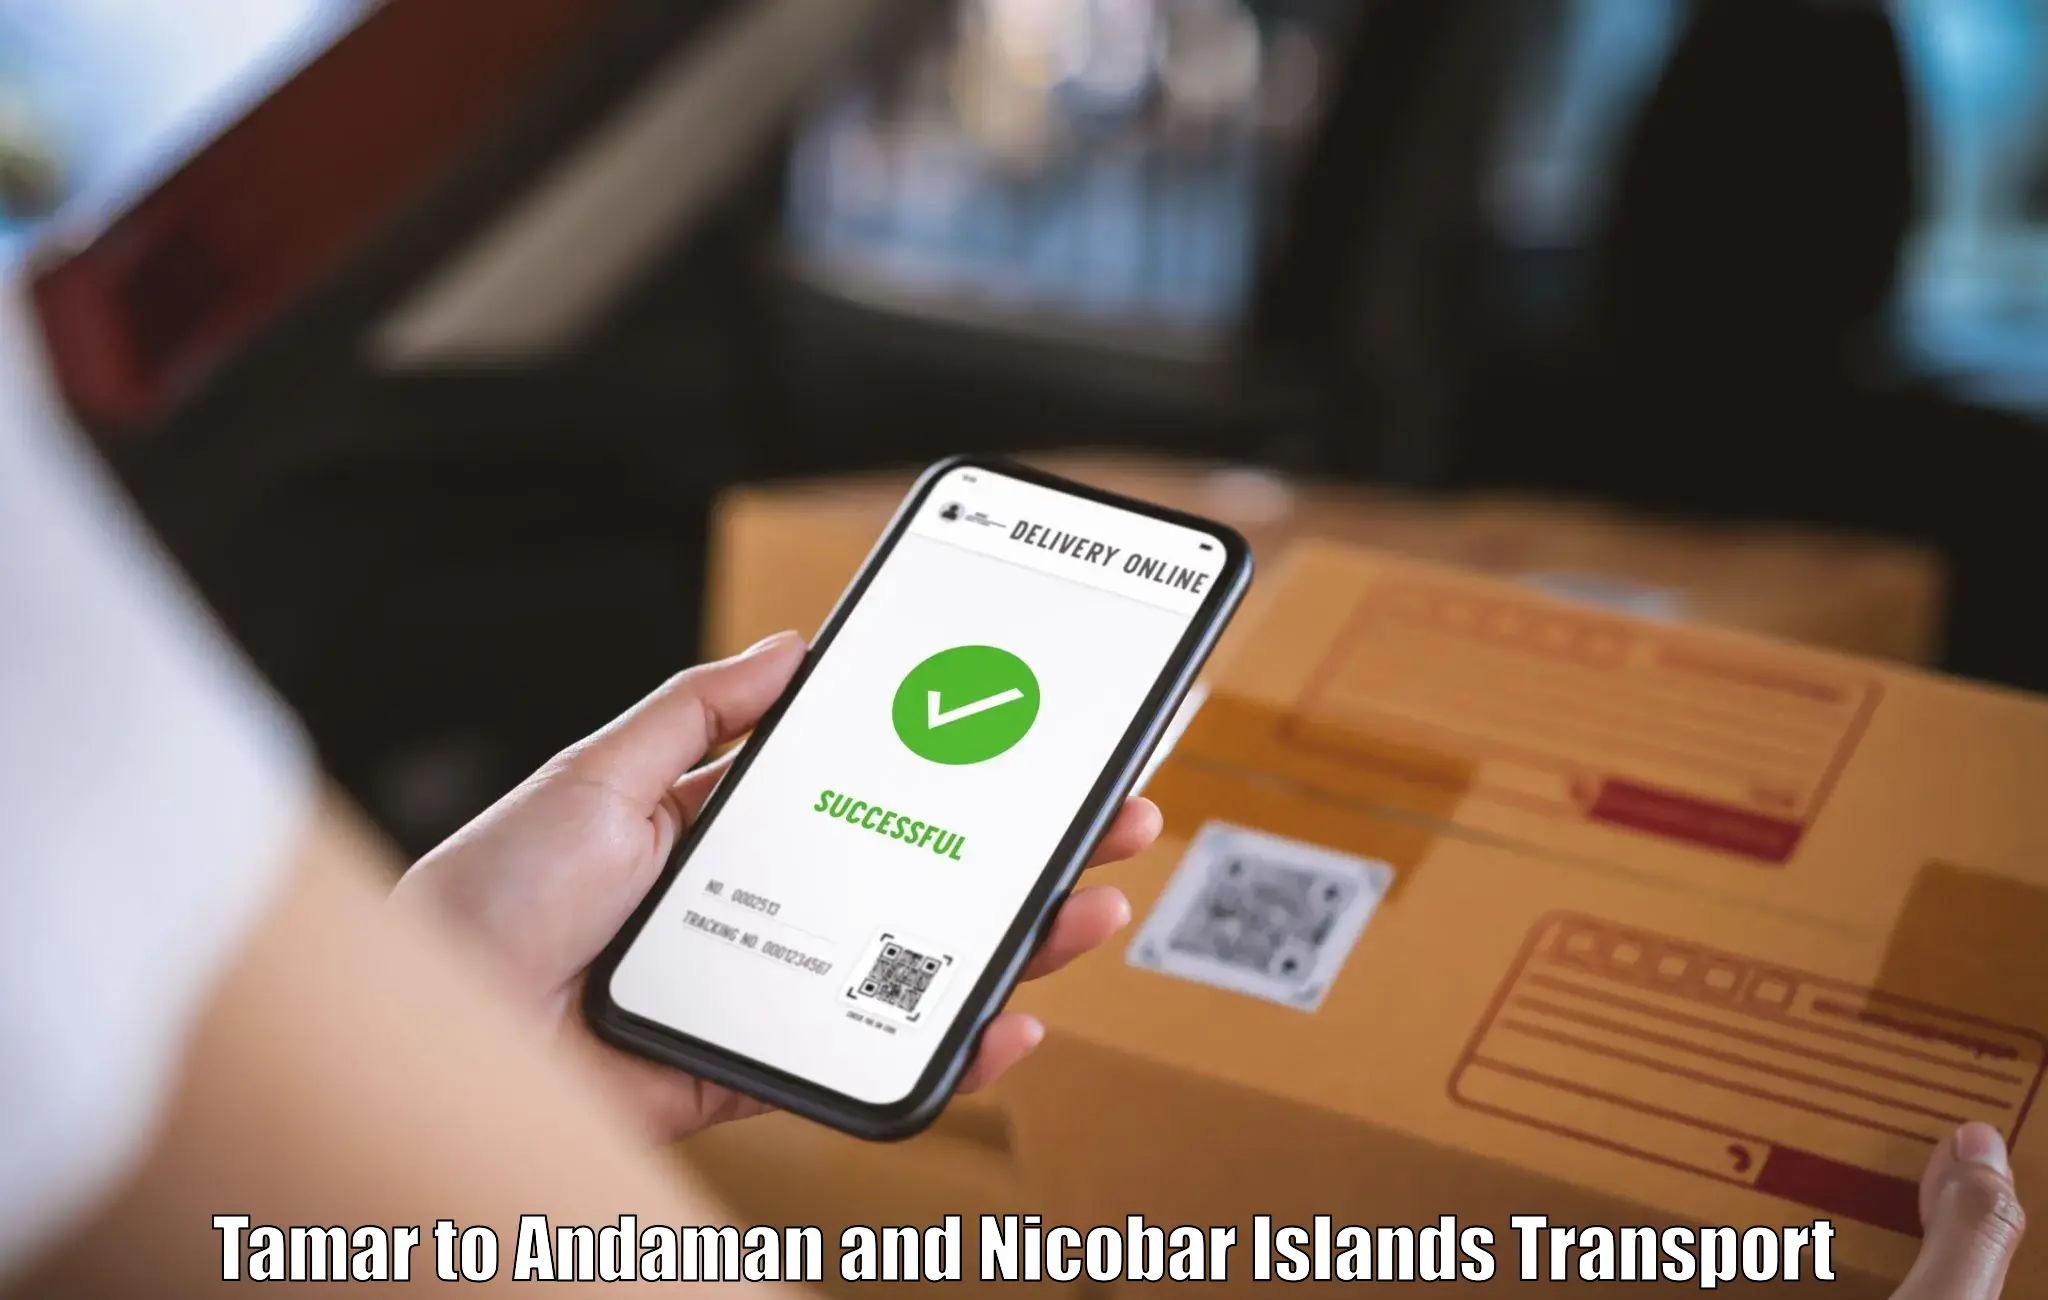 Furniture transport service Tamar to Andaman and Nicobar Islands